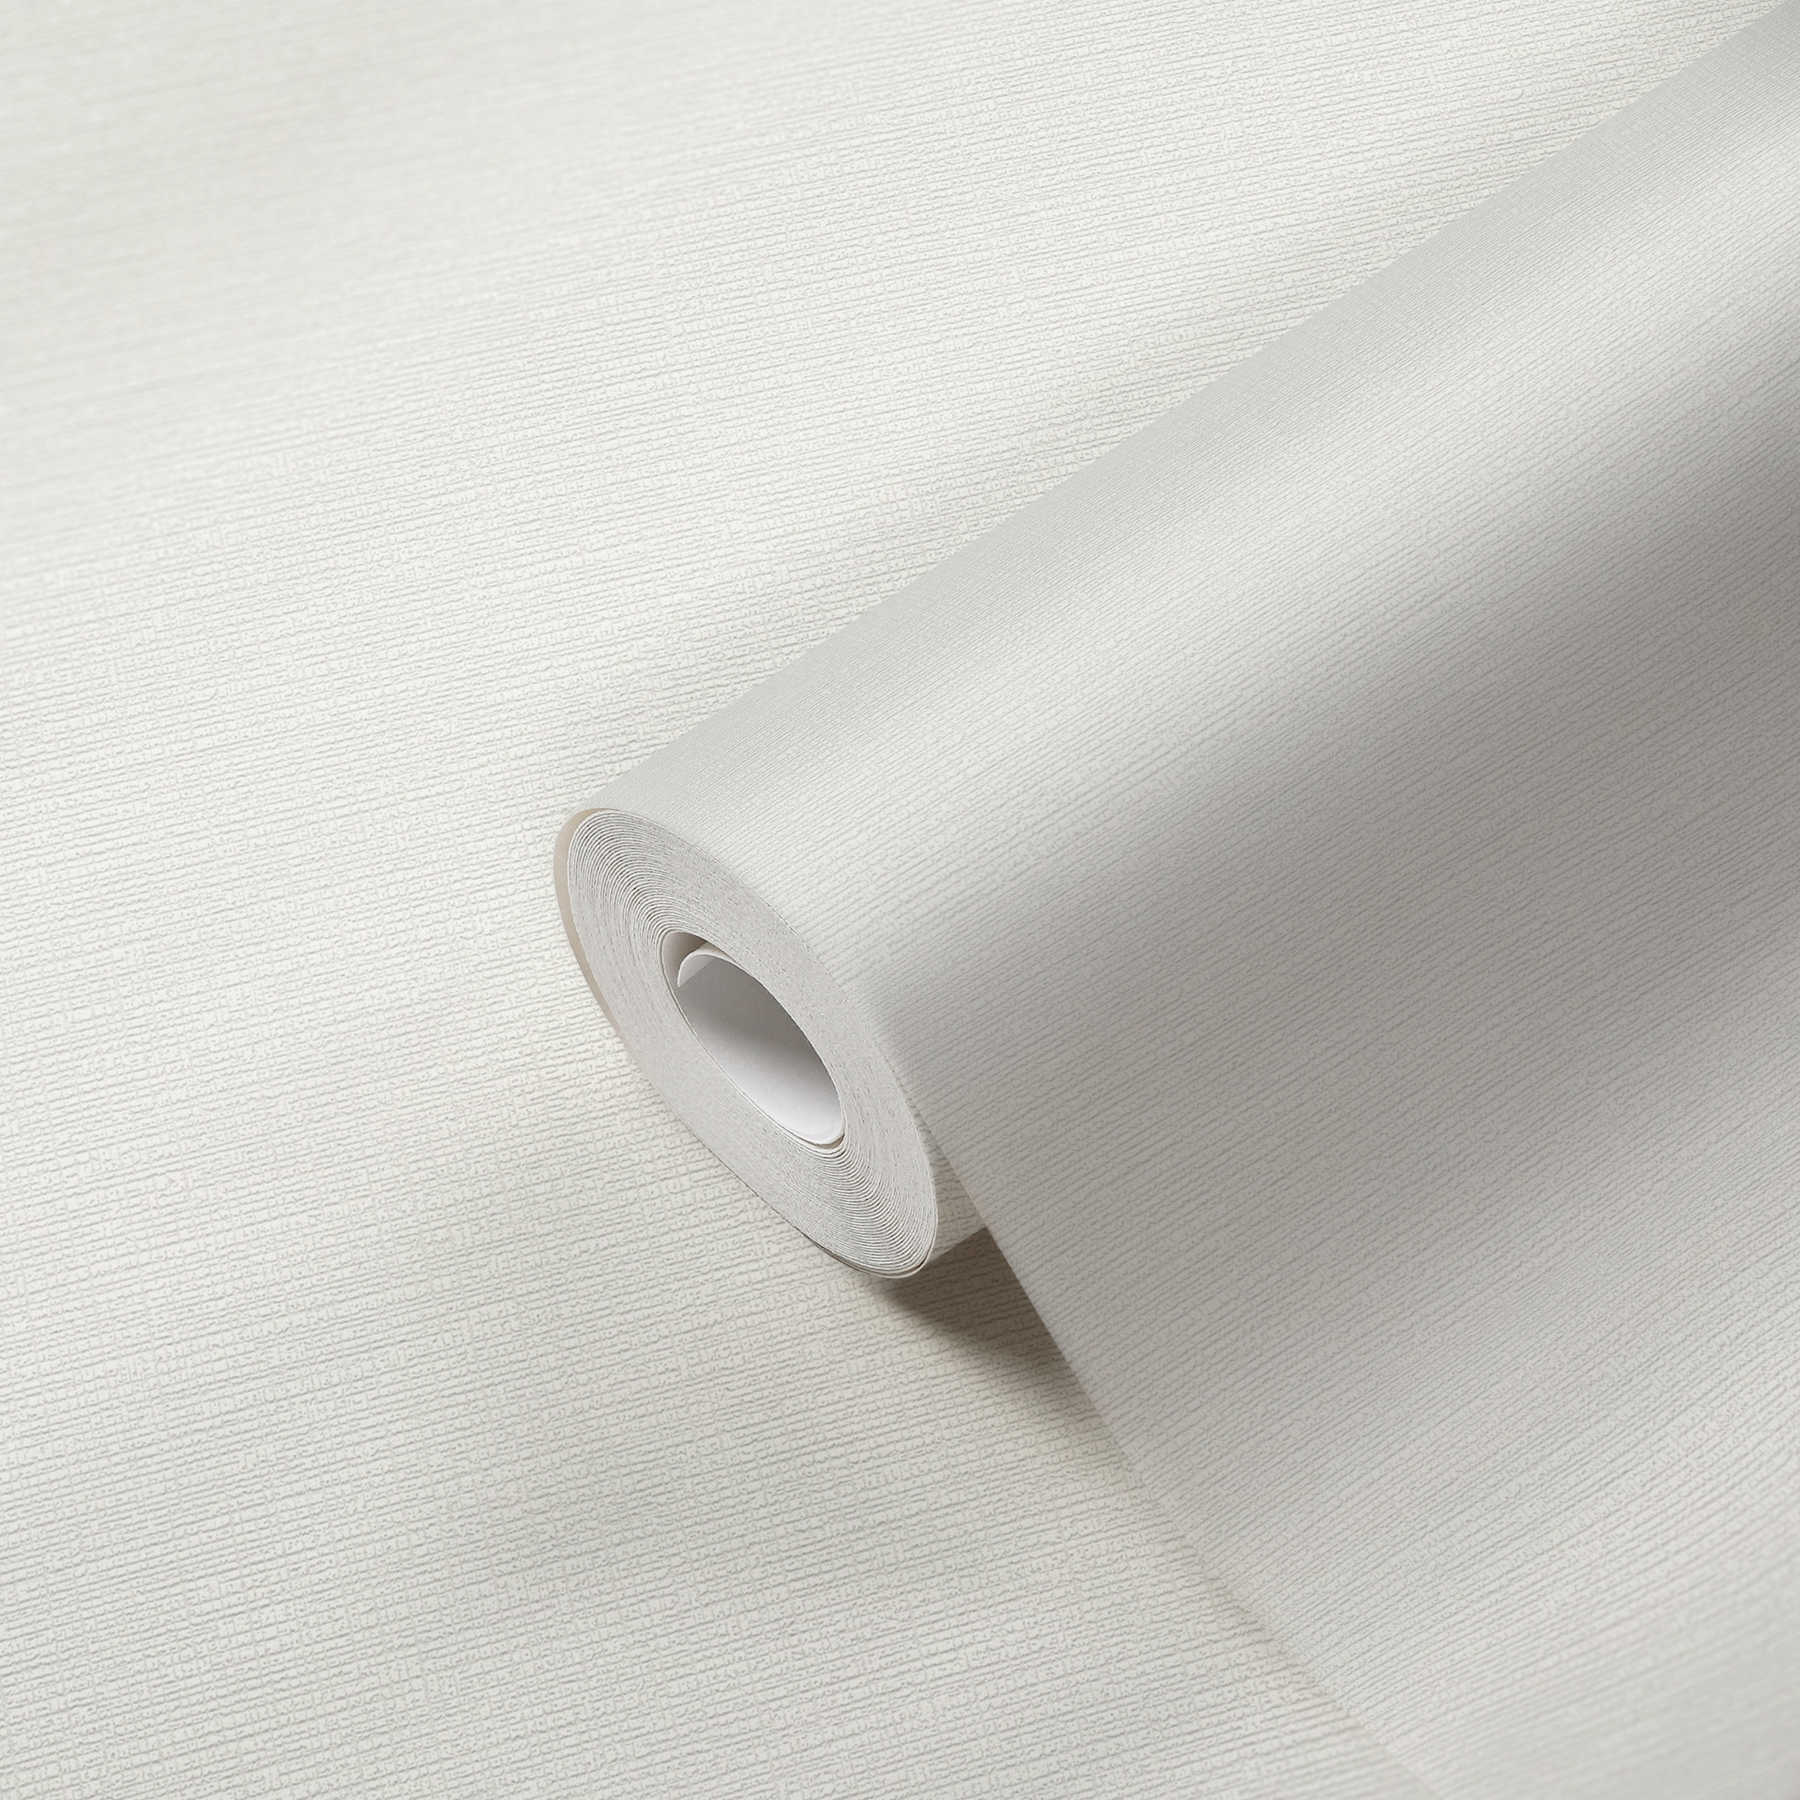             Papel pintado no tejido blanco con estructura retro y efecto textil
        